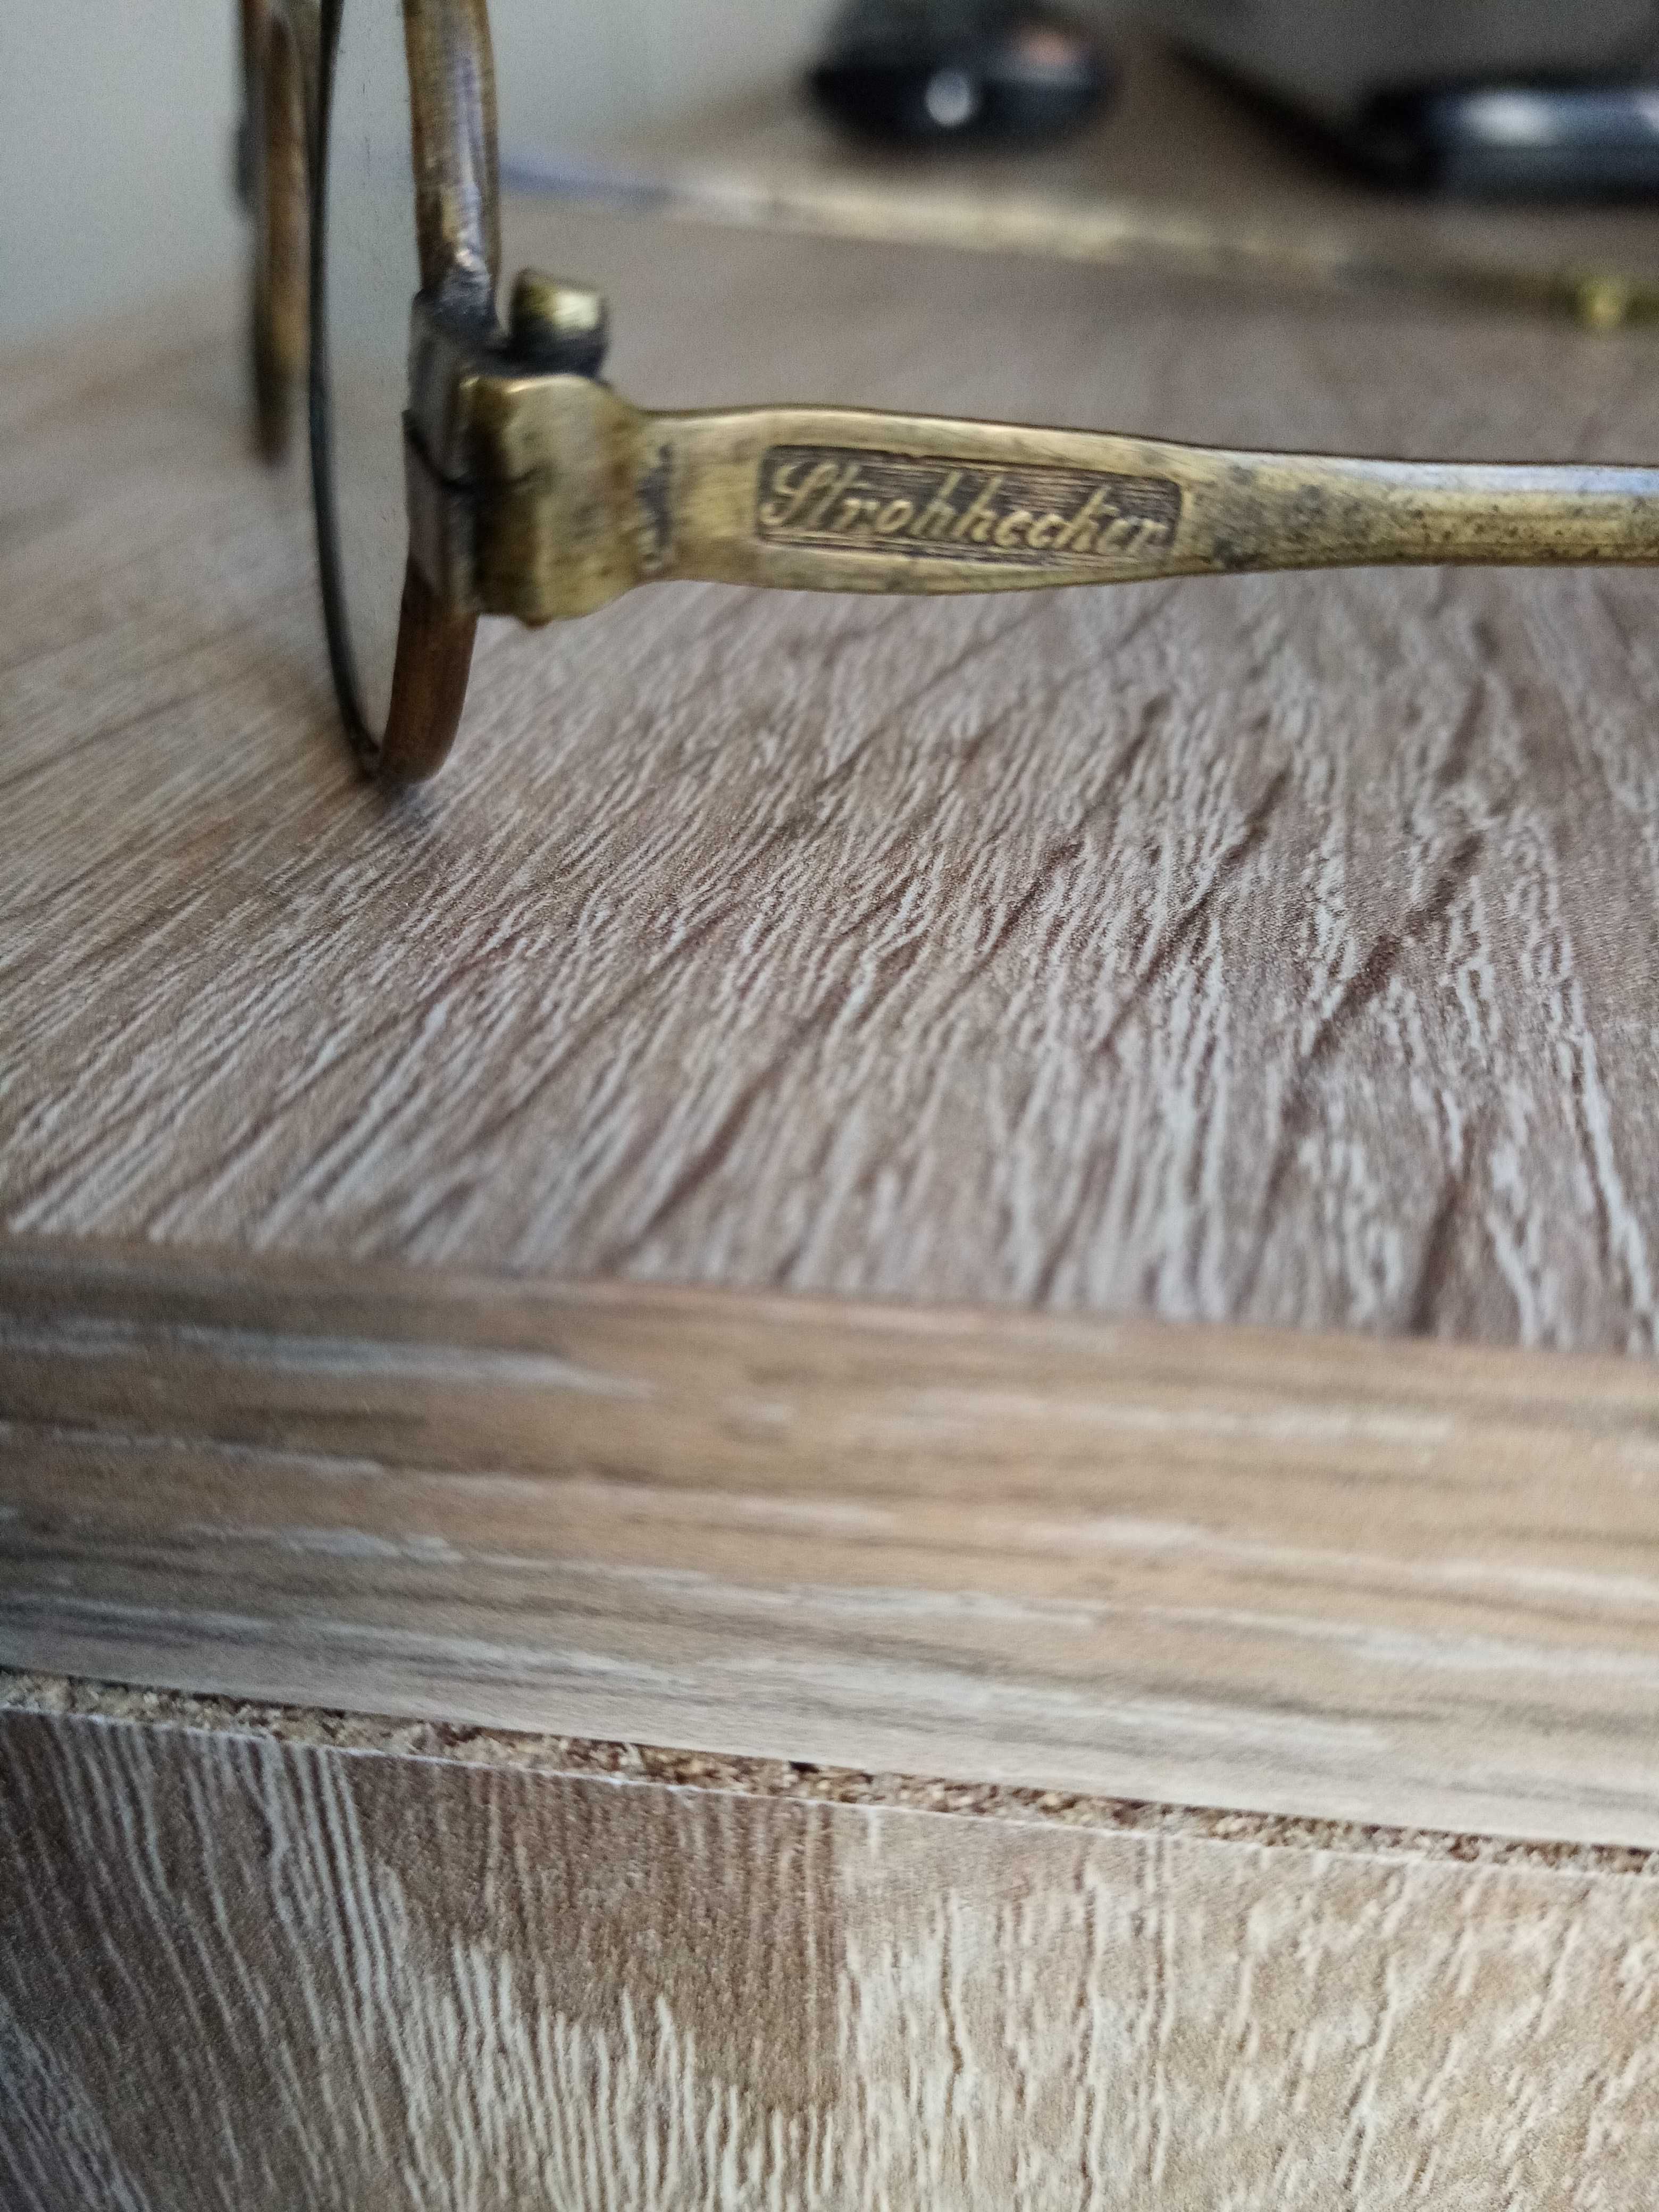 Zabytkowe unikatowe okulary i etui firmy Strohhecker z końca 19 wieku